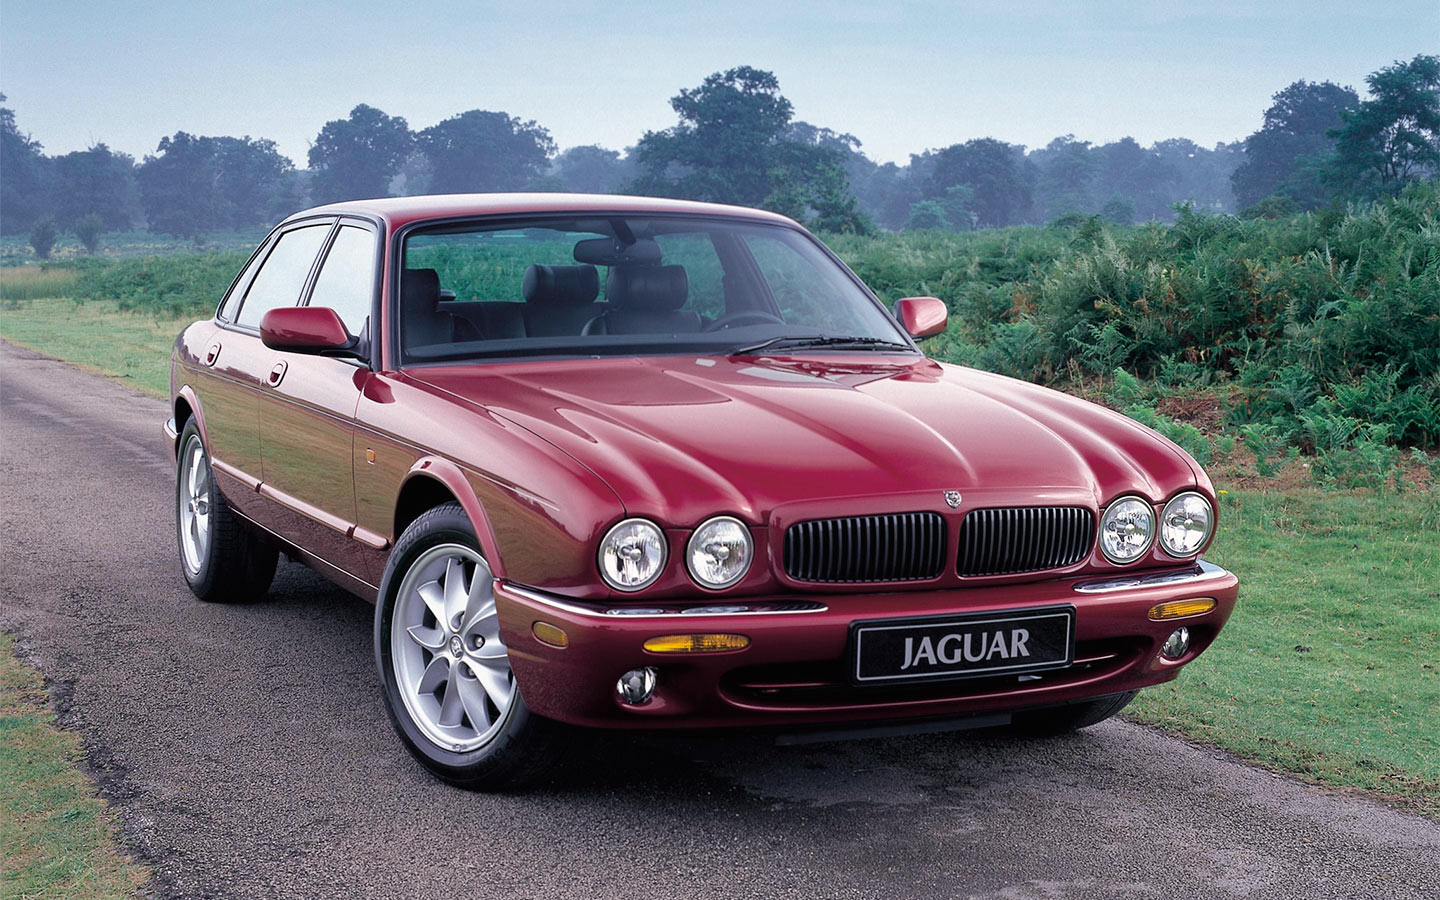 Последняя британская классика. Тест-драйв легендарного Jaguar XJ